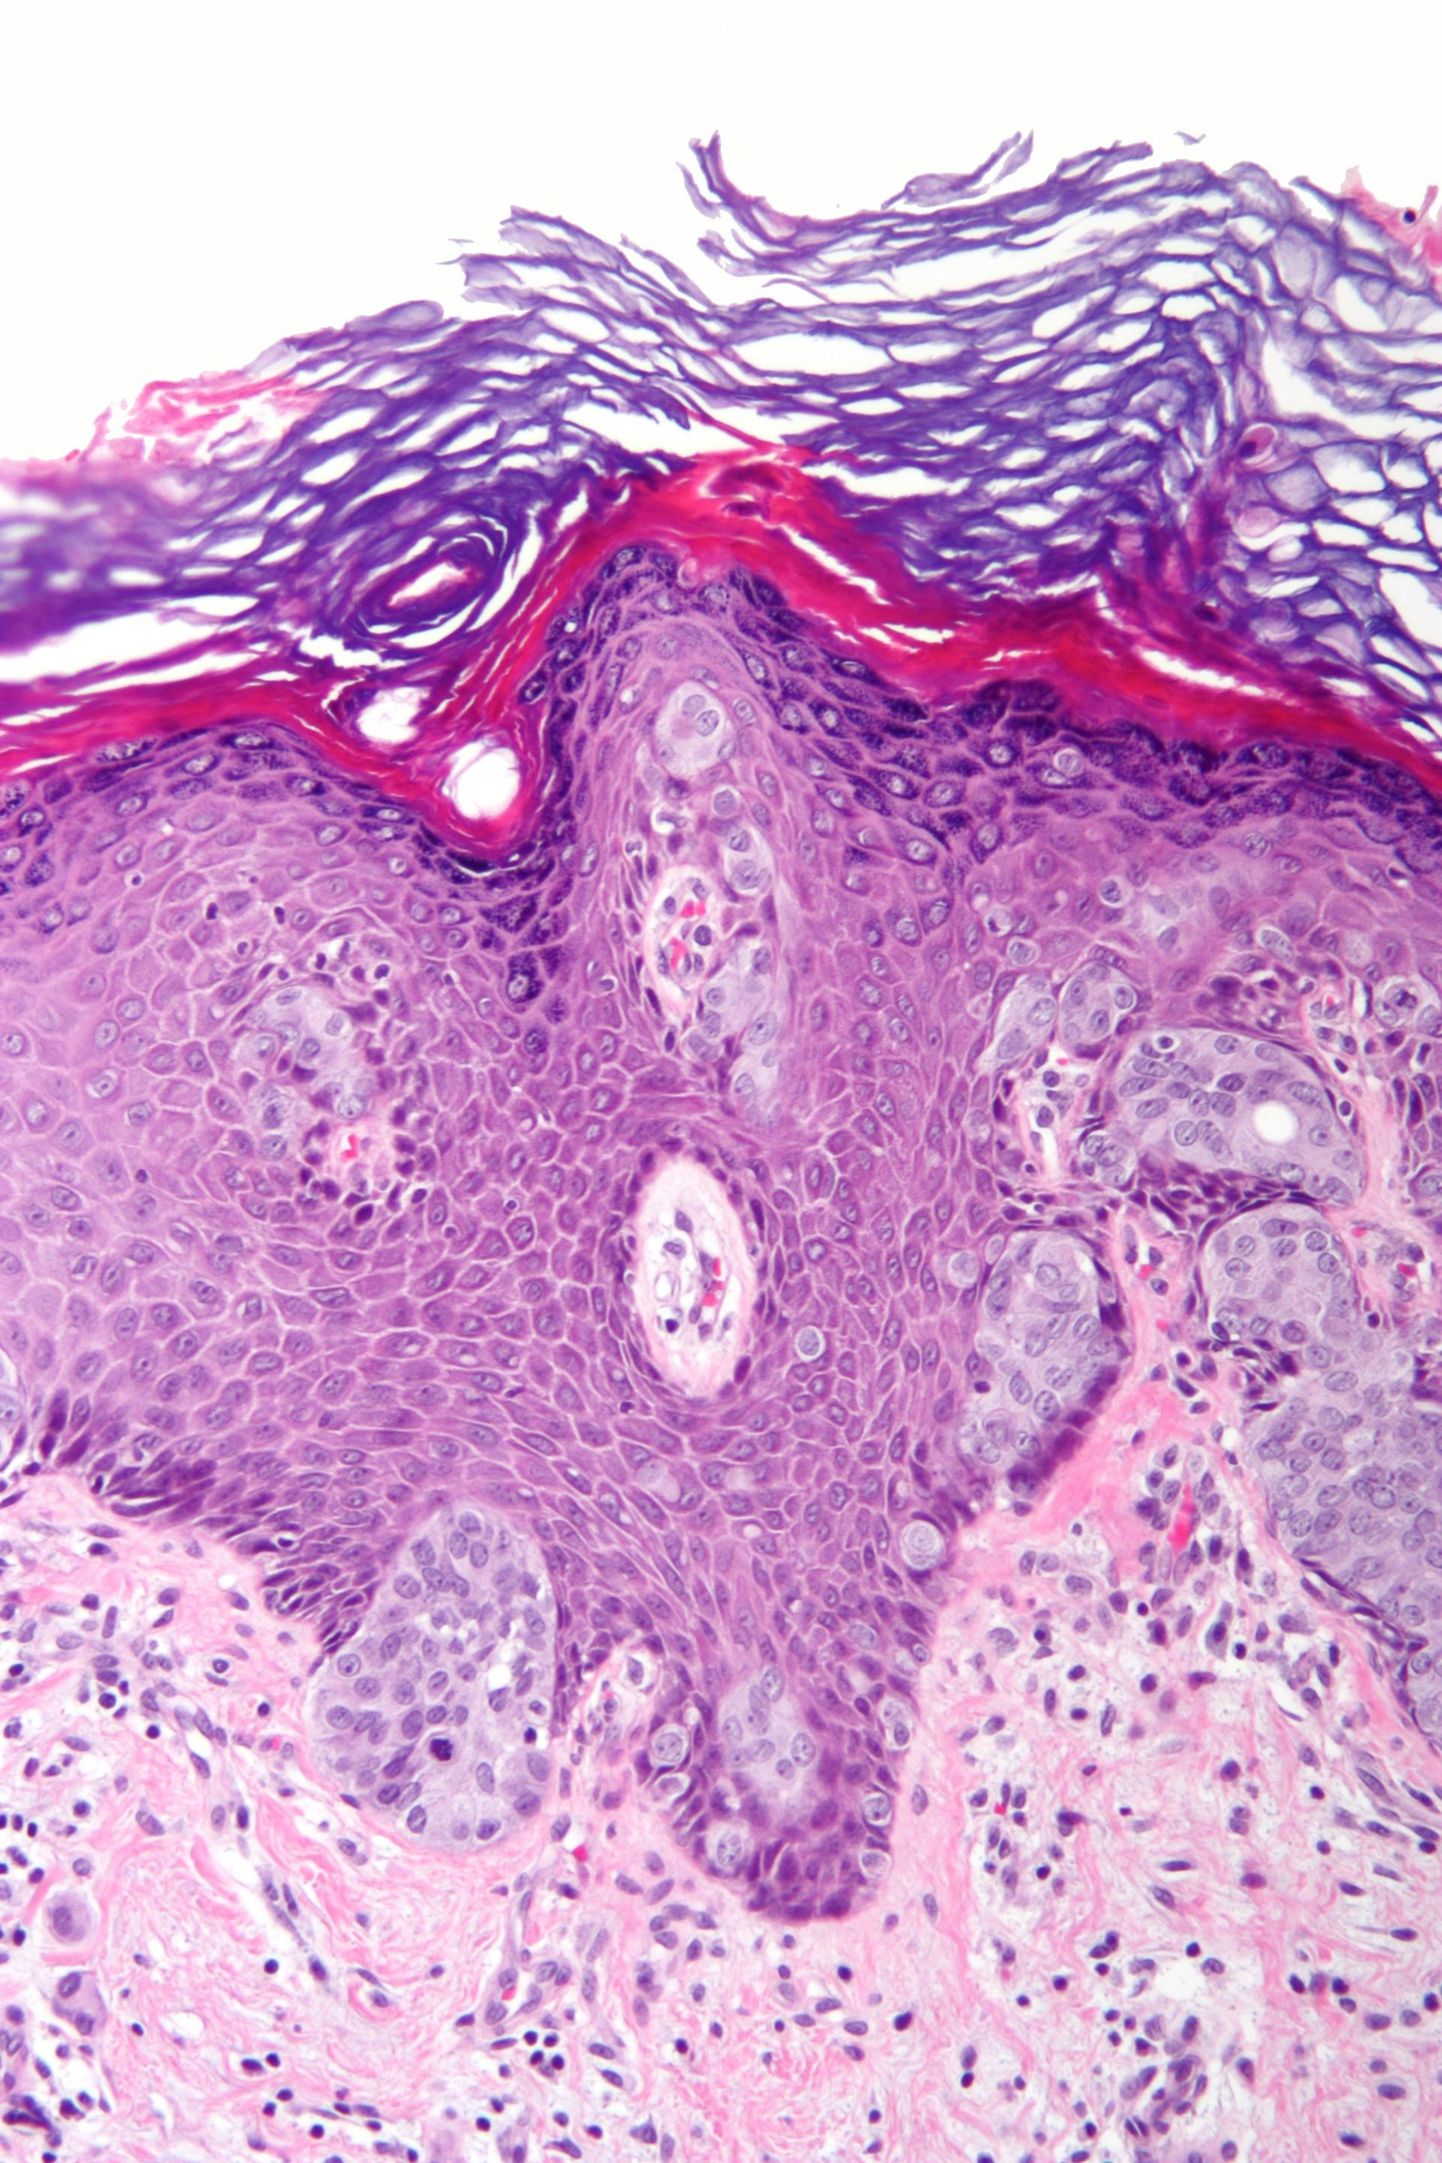 Kartsinoom tüüpi vähi rakud. FOTO: Wikipedia/Cc By-sa 3.0